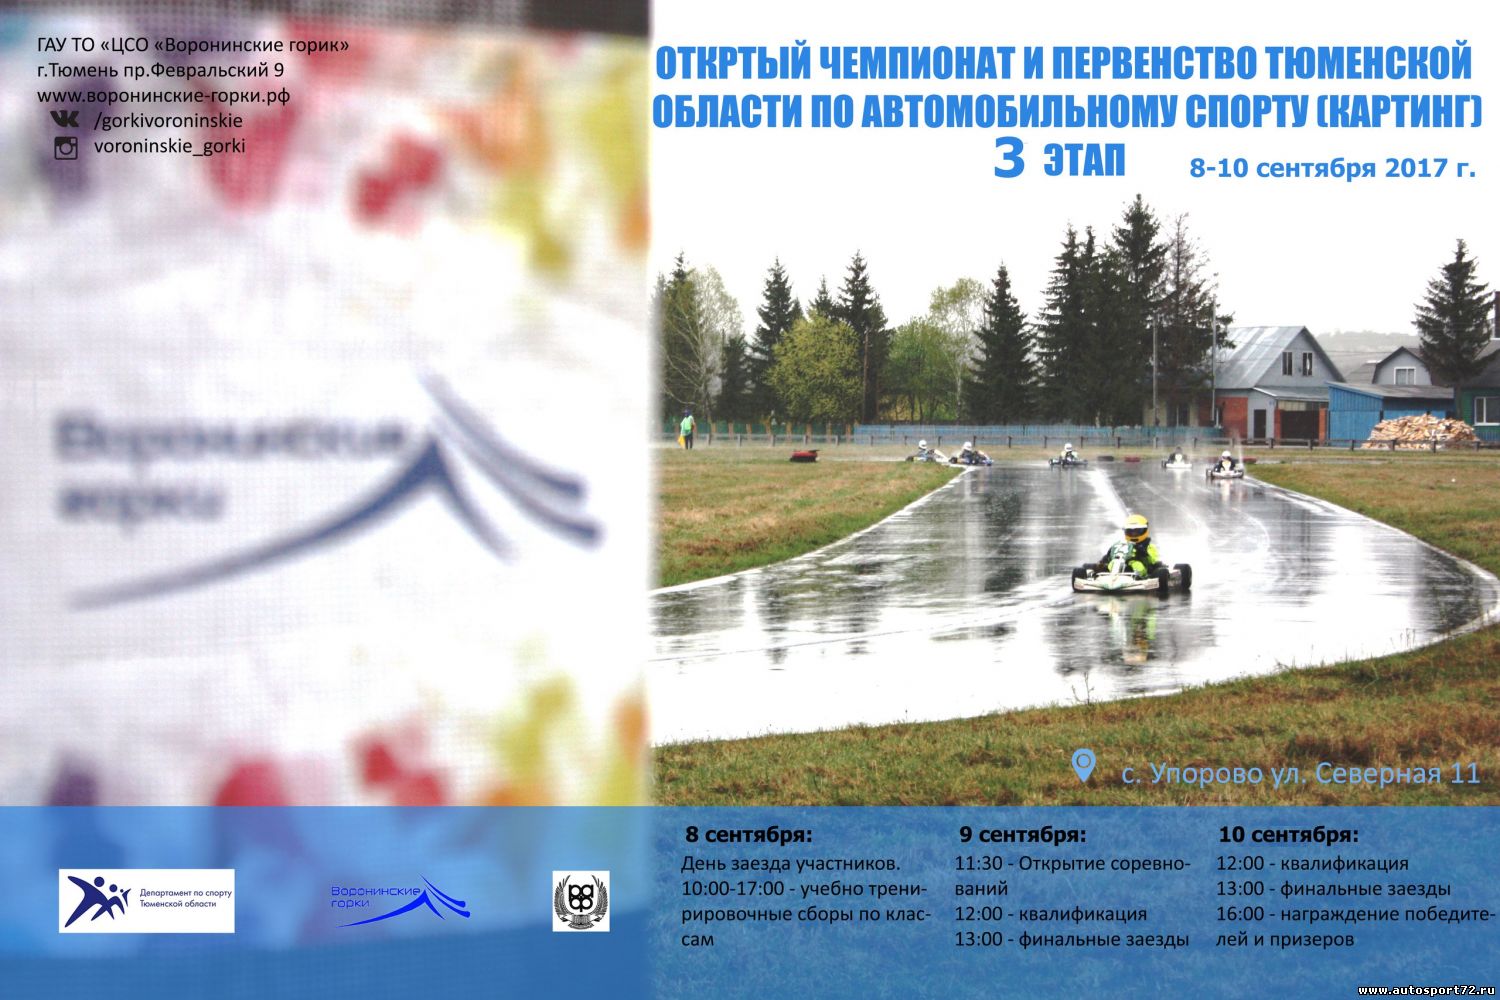 Открытый Чемпионат и первенство Тюменской области по автомобильному спорту (картинг)